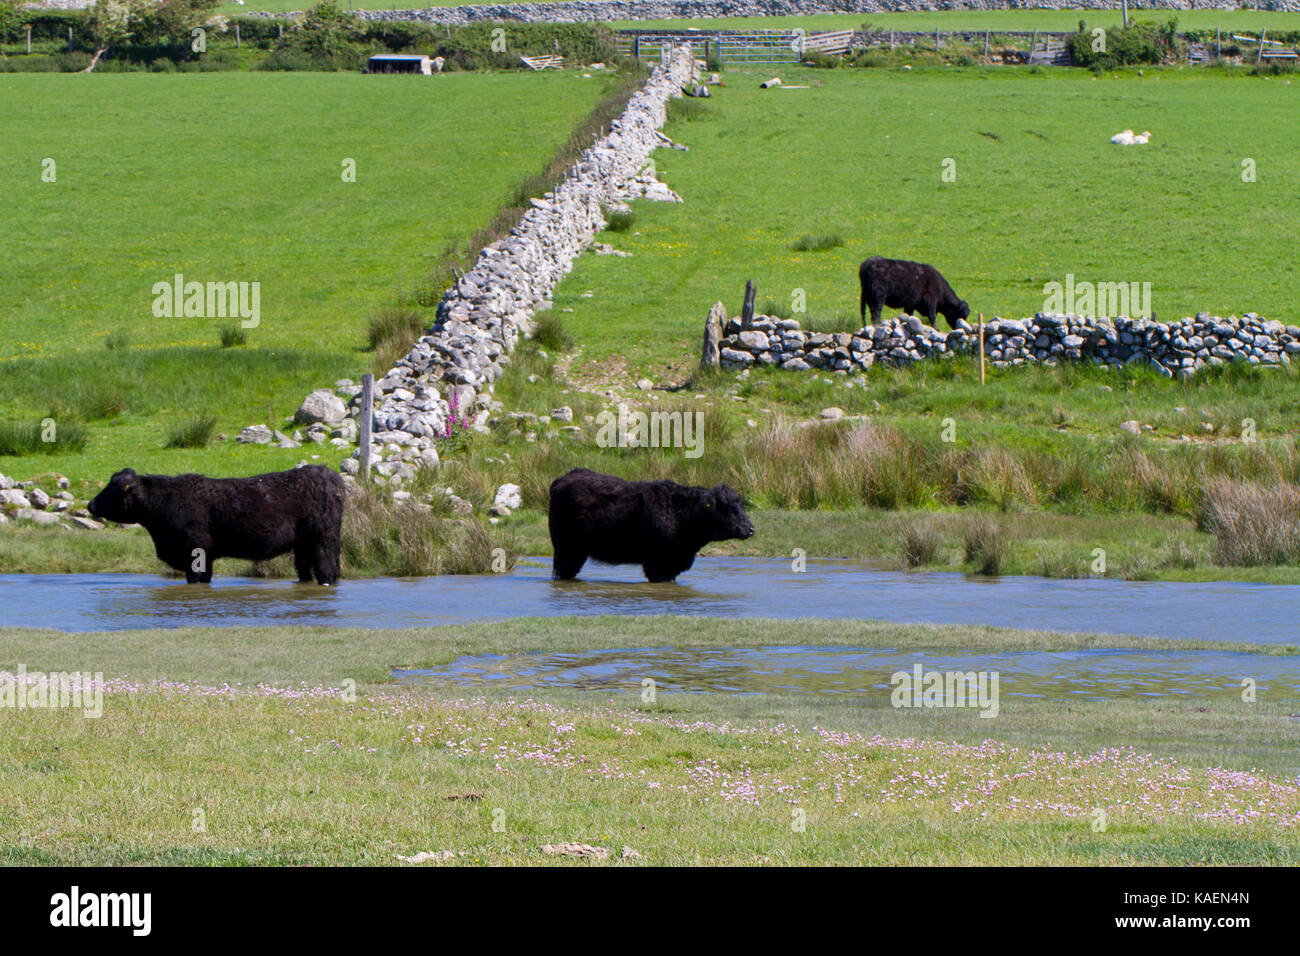 Welsh schwarzen Rinder stehen im Wasser am Rande des saltmarsh. Tonfanau,, Tywyn, Gwynedd, Wales. Mai. Stockfoto